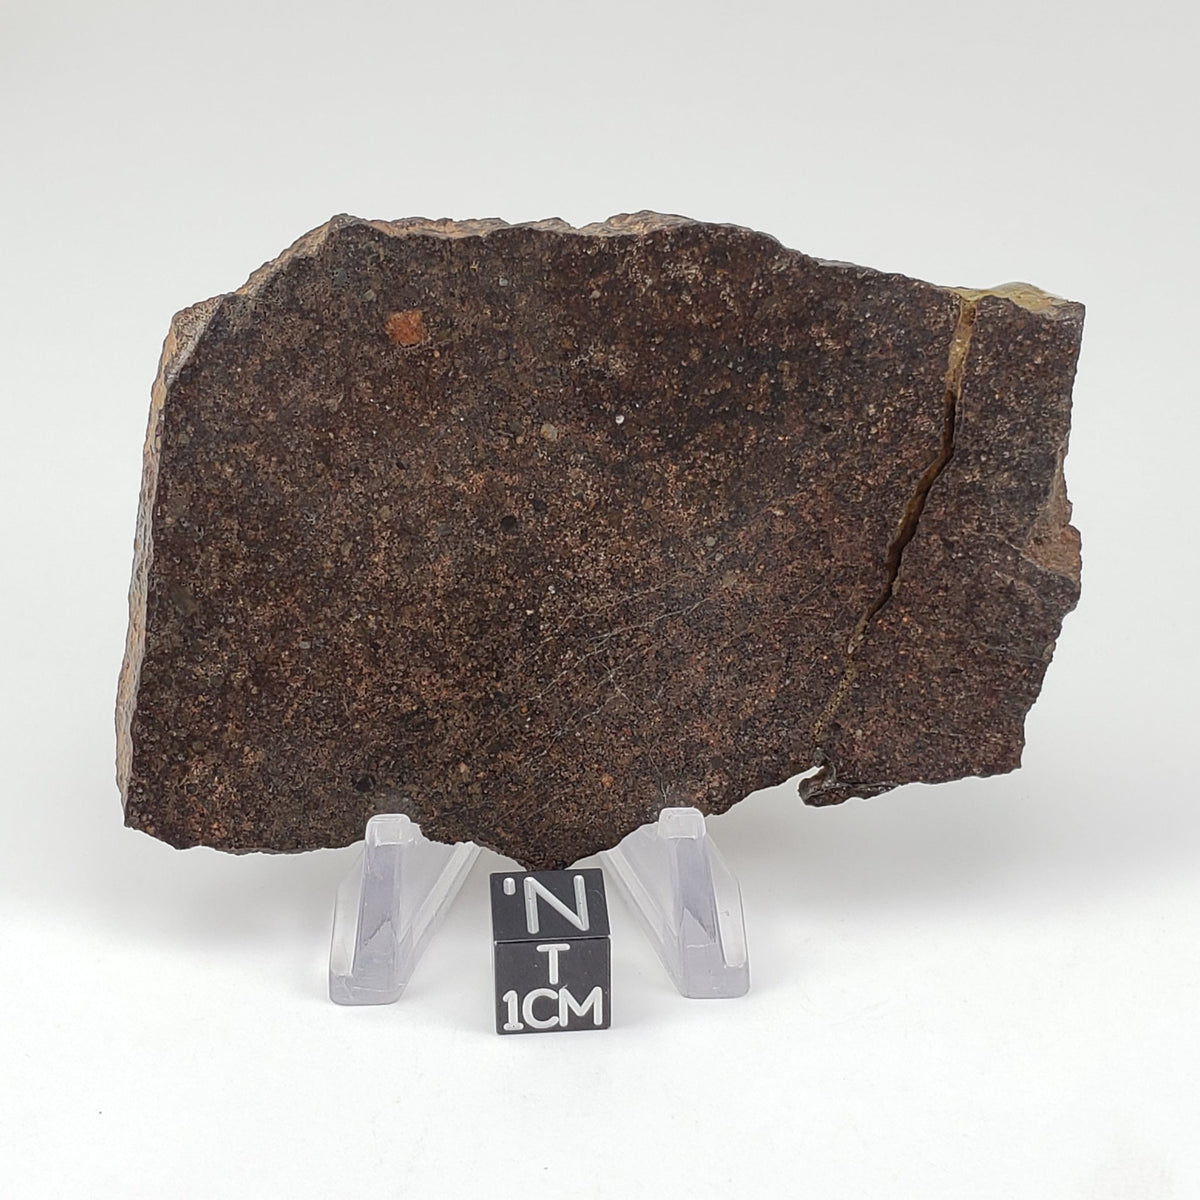 Dhofar 224 Meteorite | 72.8 Grams | Full Slice | Rare H4 Chondrite | Sahara